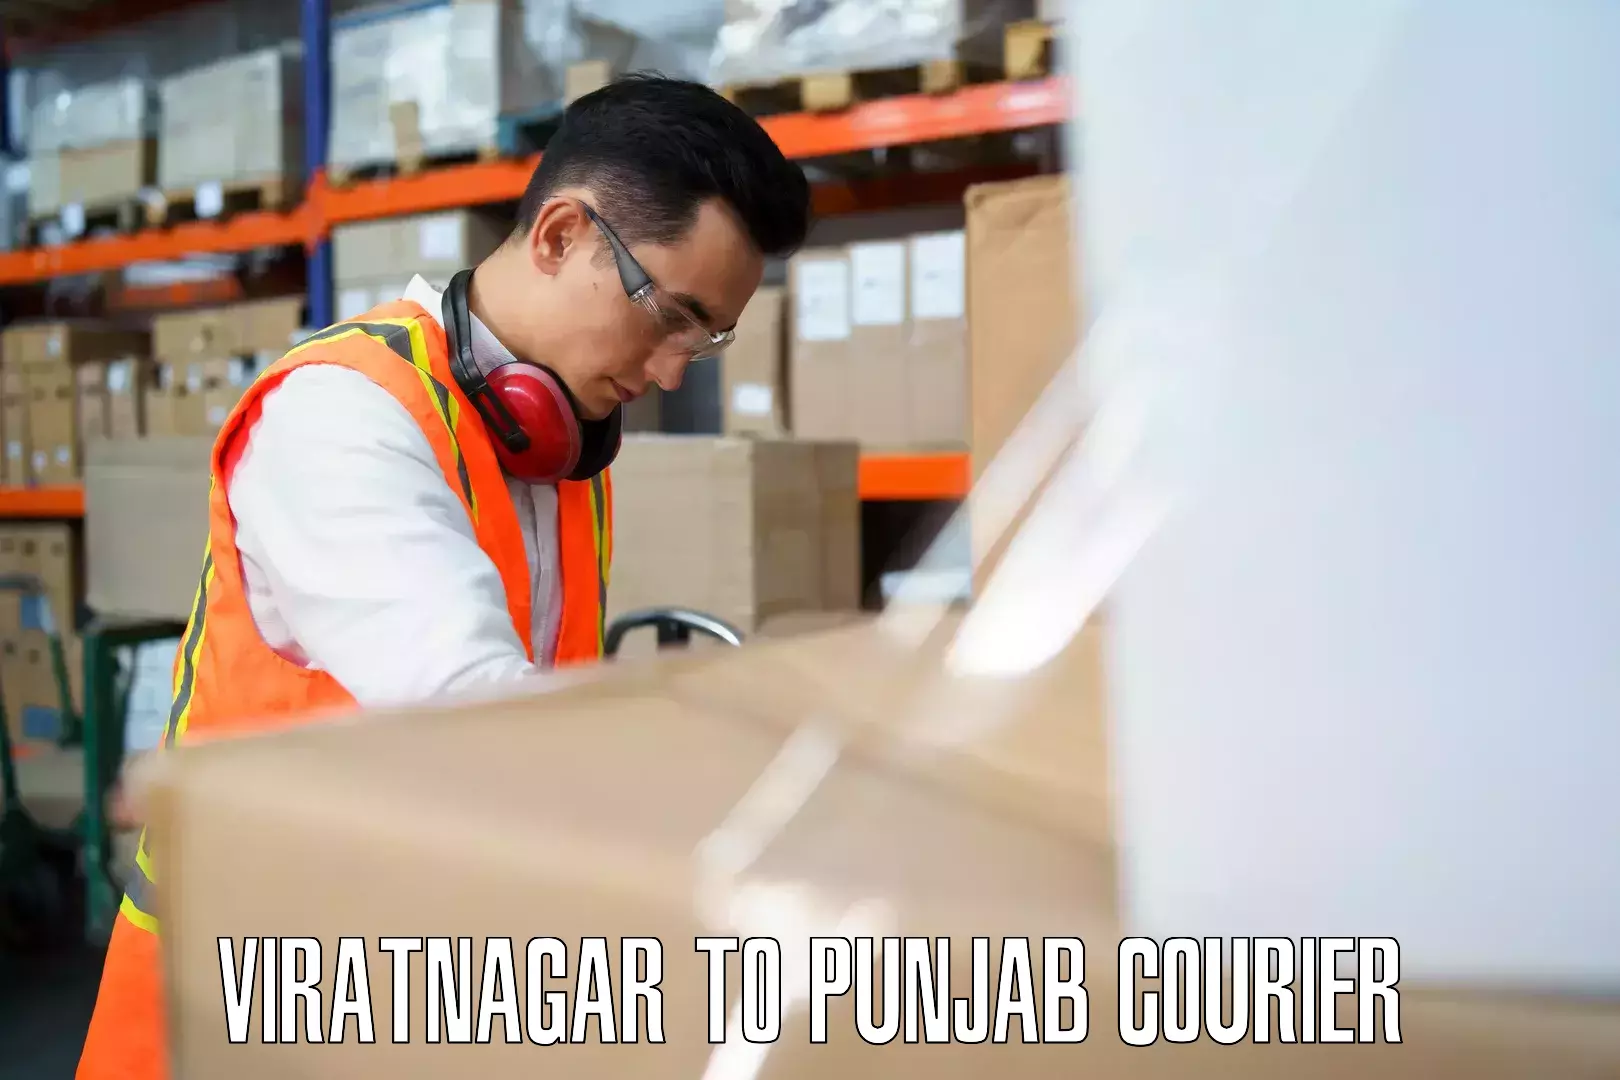 Global baggage shipping Viratnagar to Zirakpur